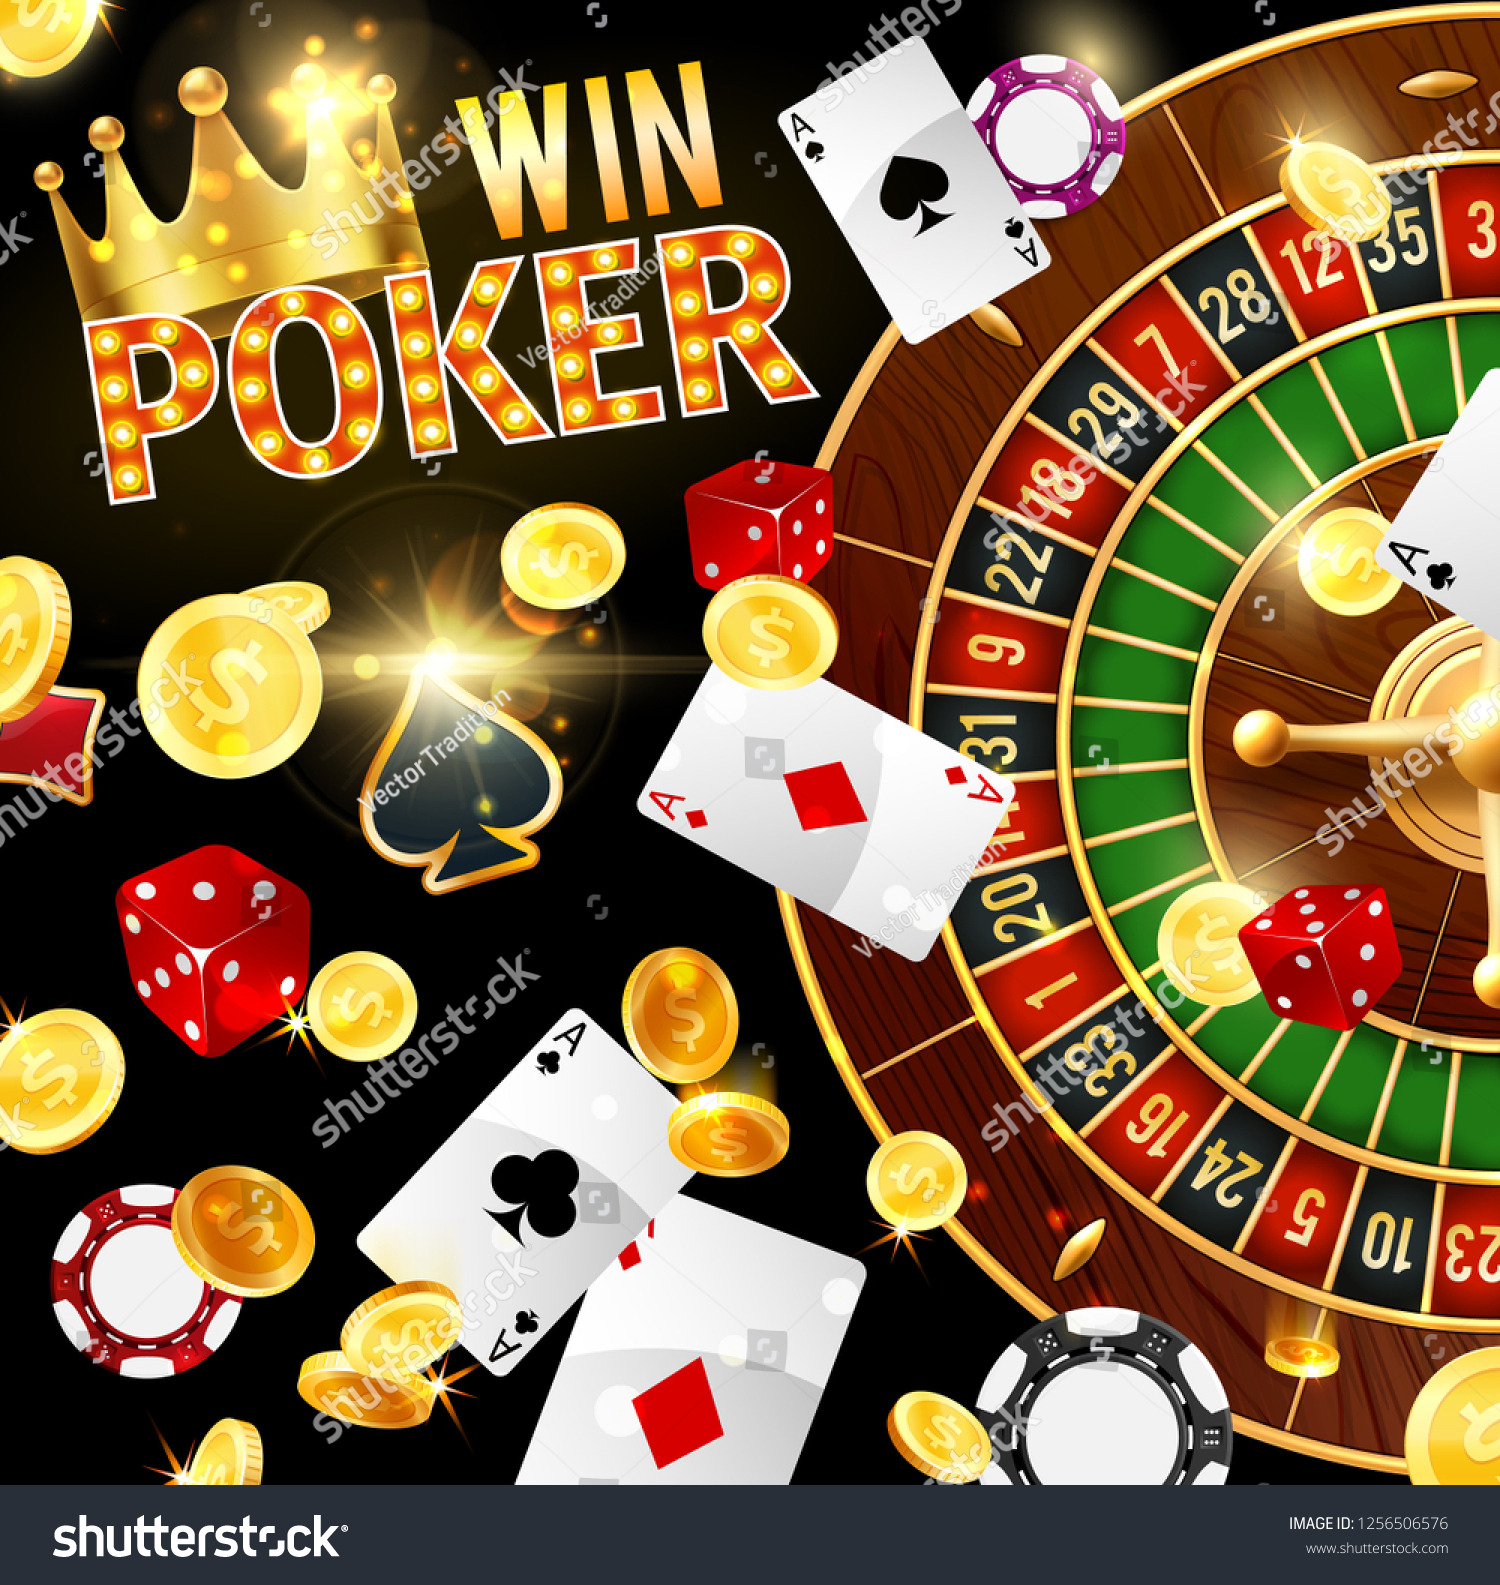 Stake gambling review